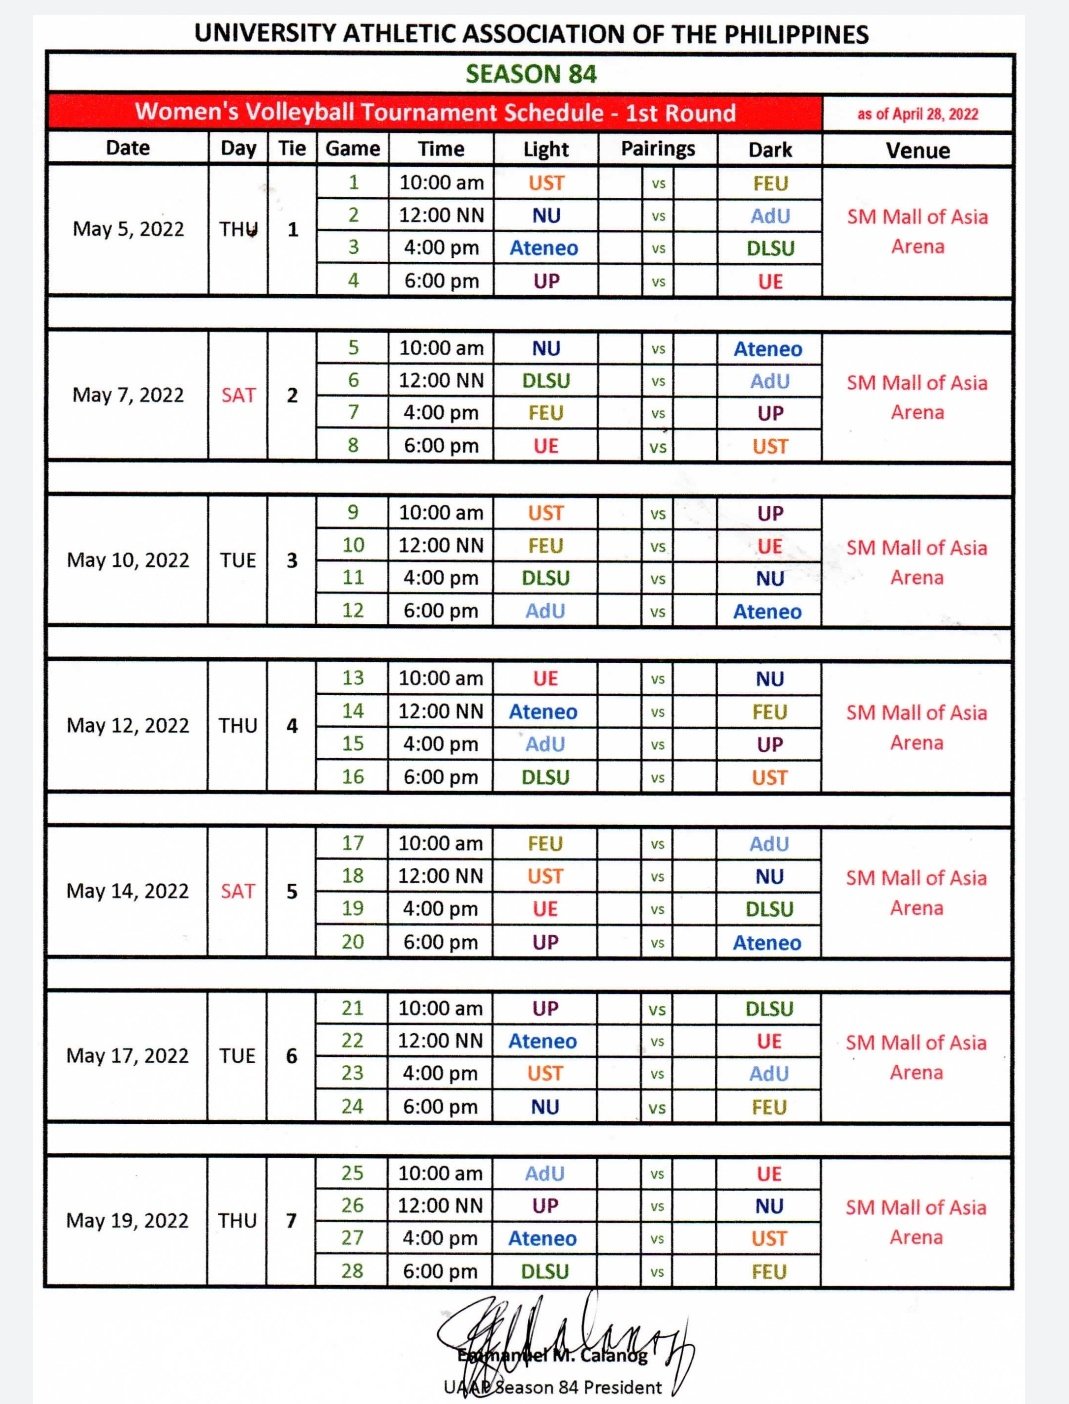 UAAP women's volleyball first round schedule